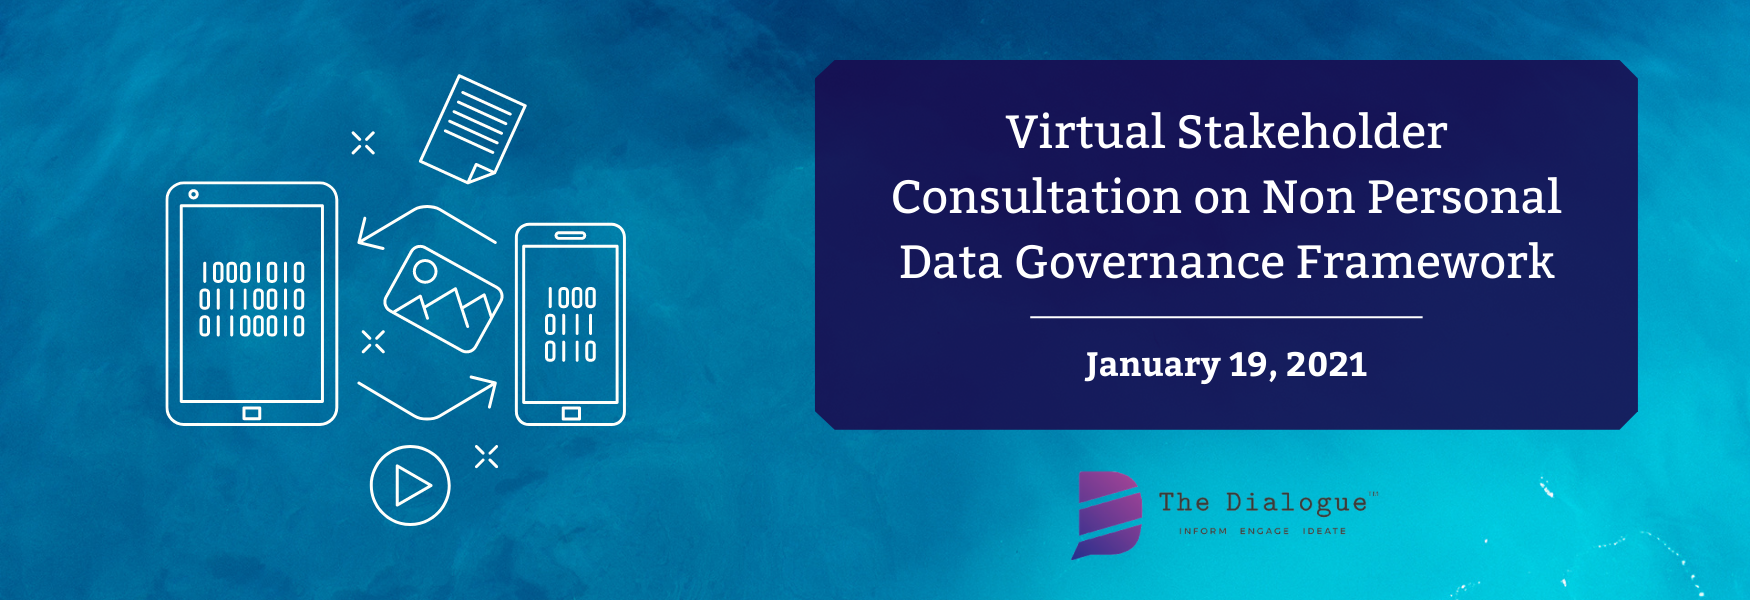 Virtual Stakeholder Consultation on Non Personal Data Governance Framework